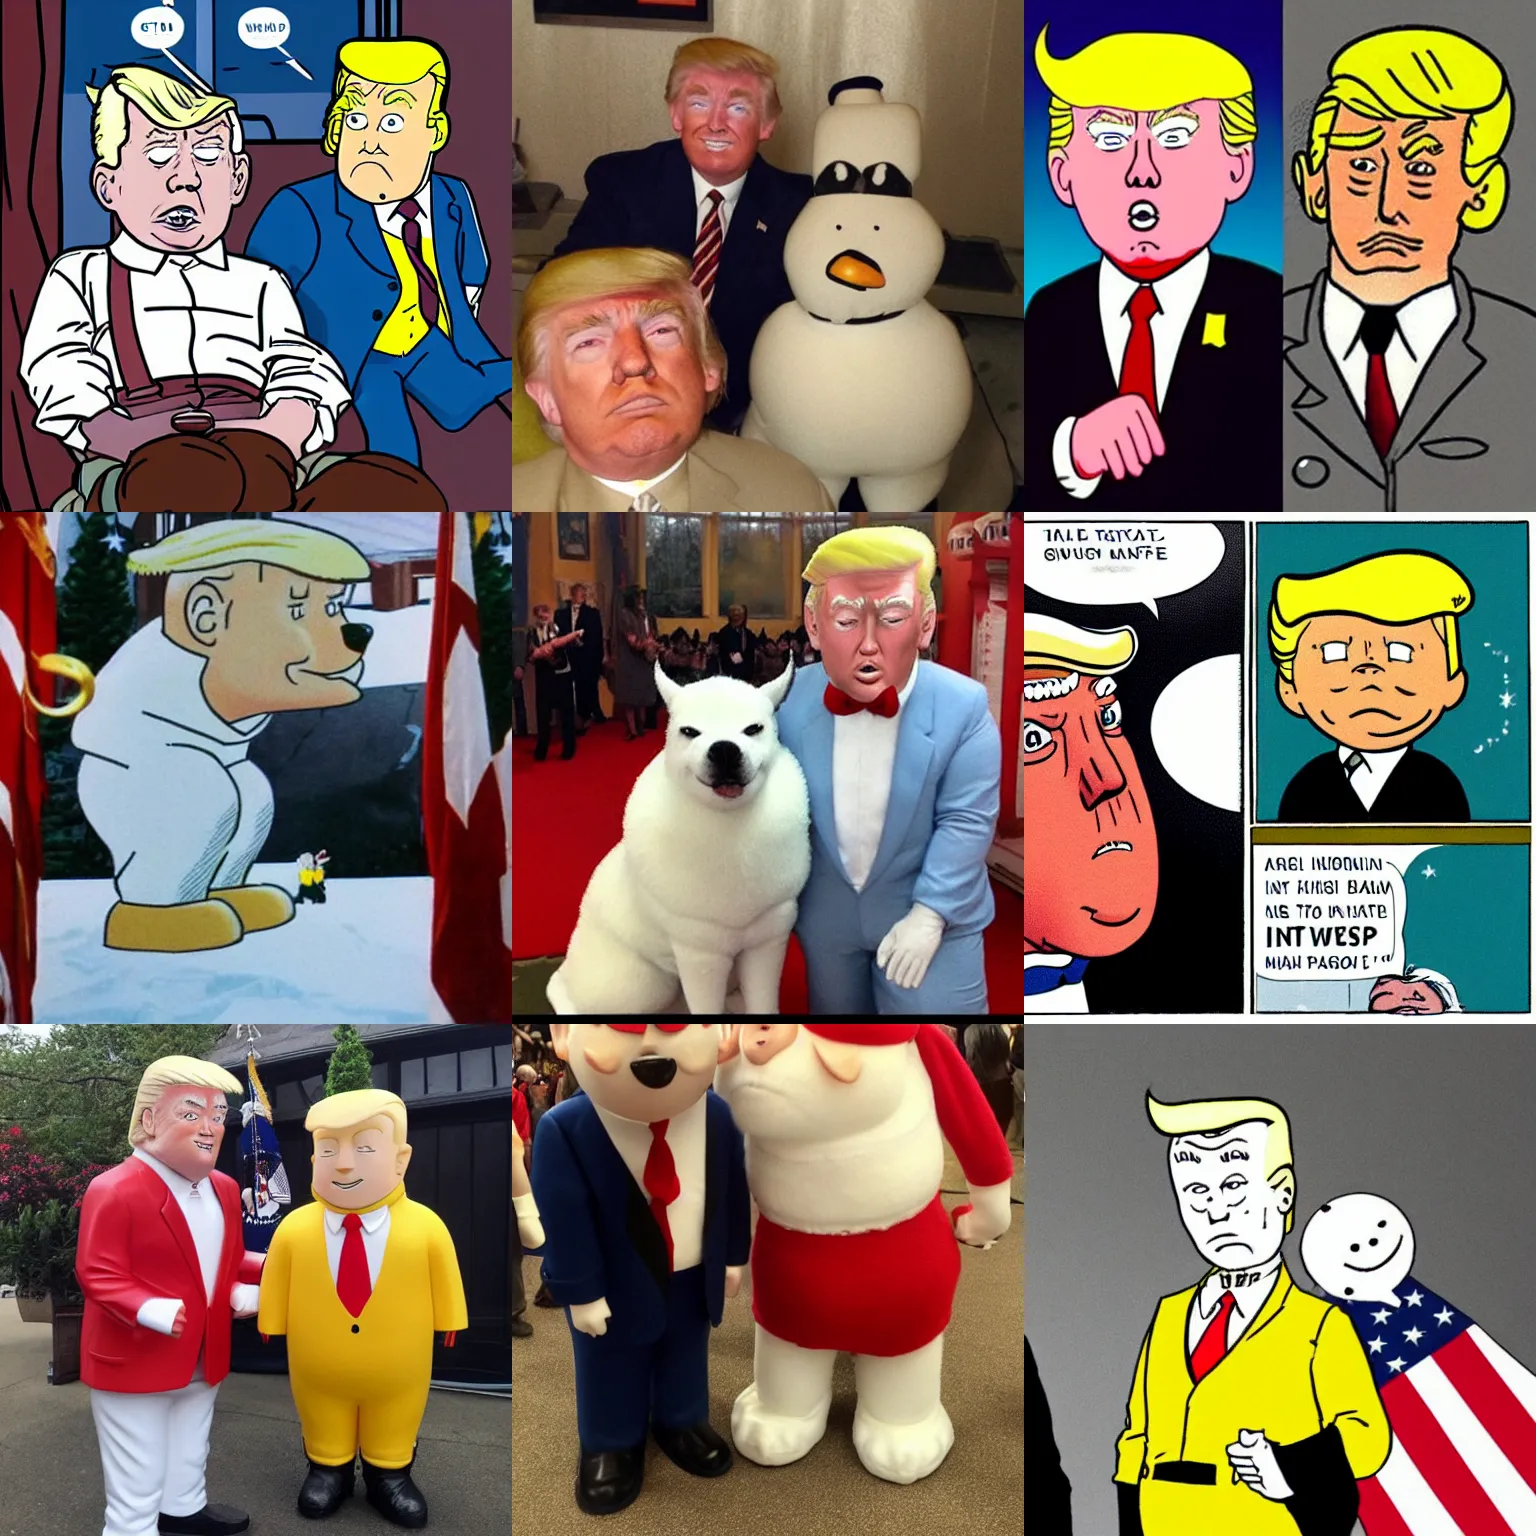 Image similar to Snowy and Tintin as Donald Trump